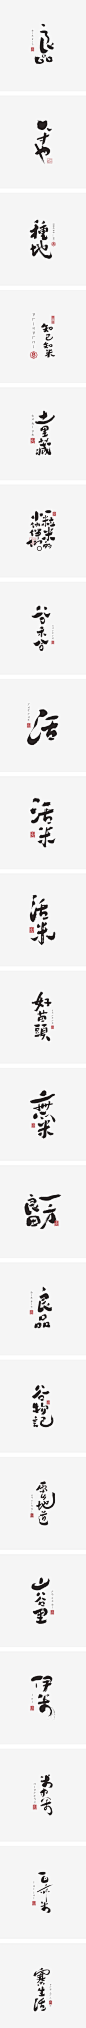 字集自乐（第五集）-字体传奇网-中国首个字体品牌设计师交流网